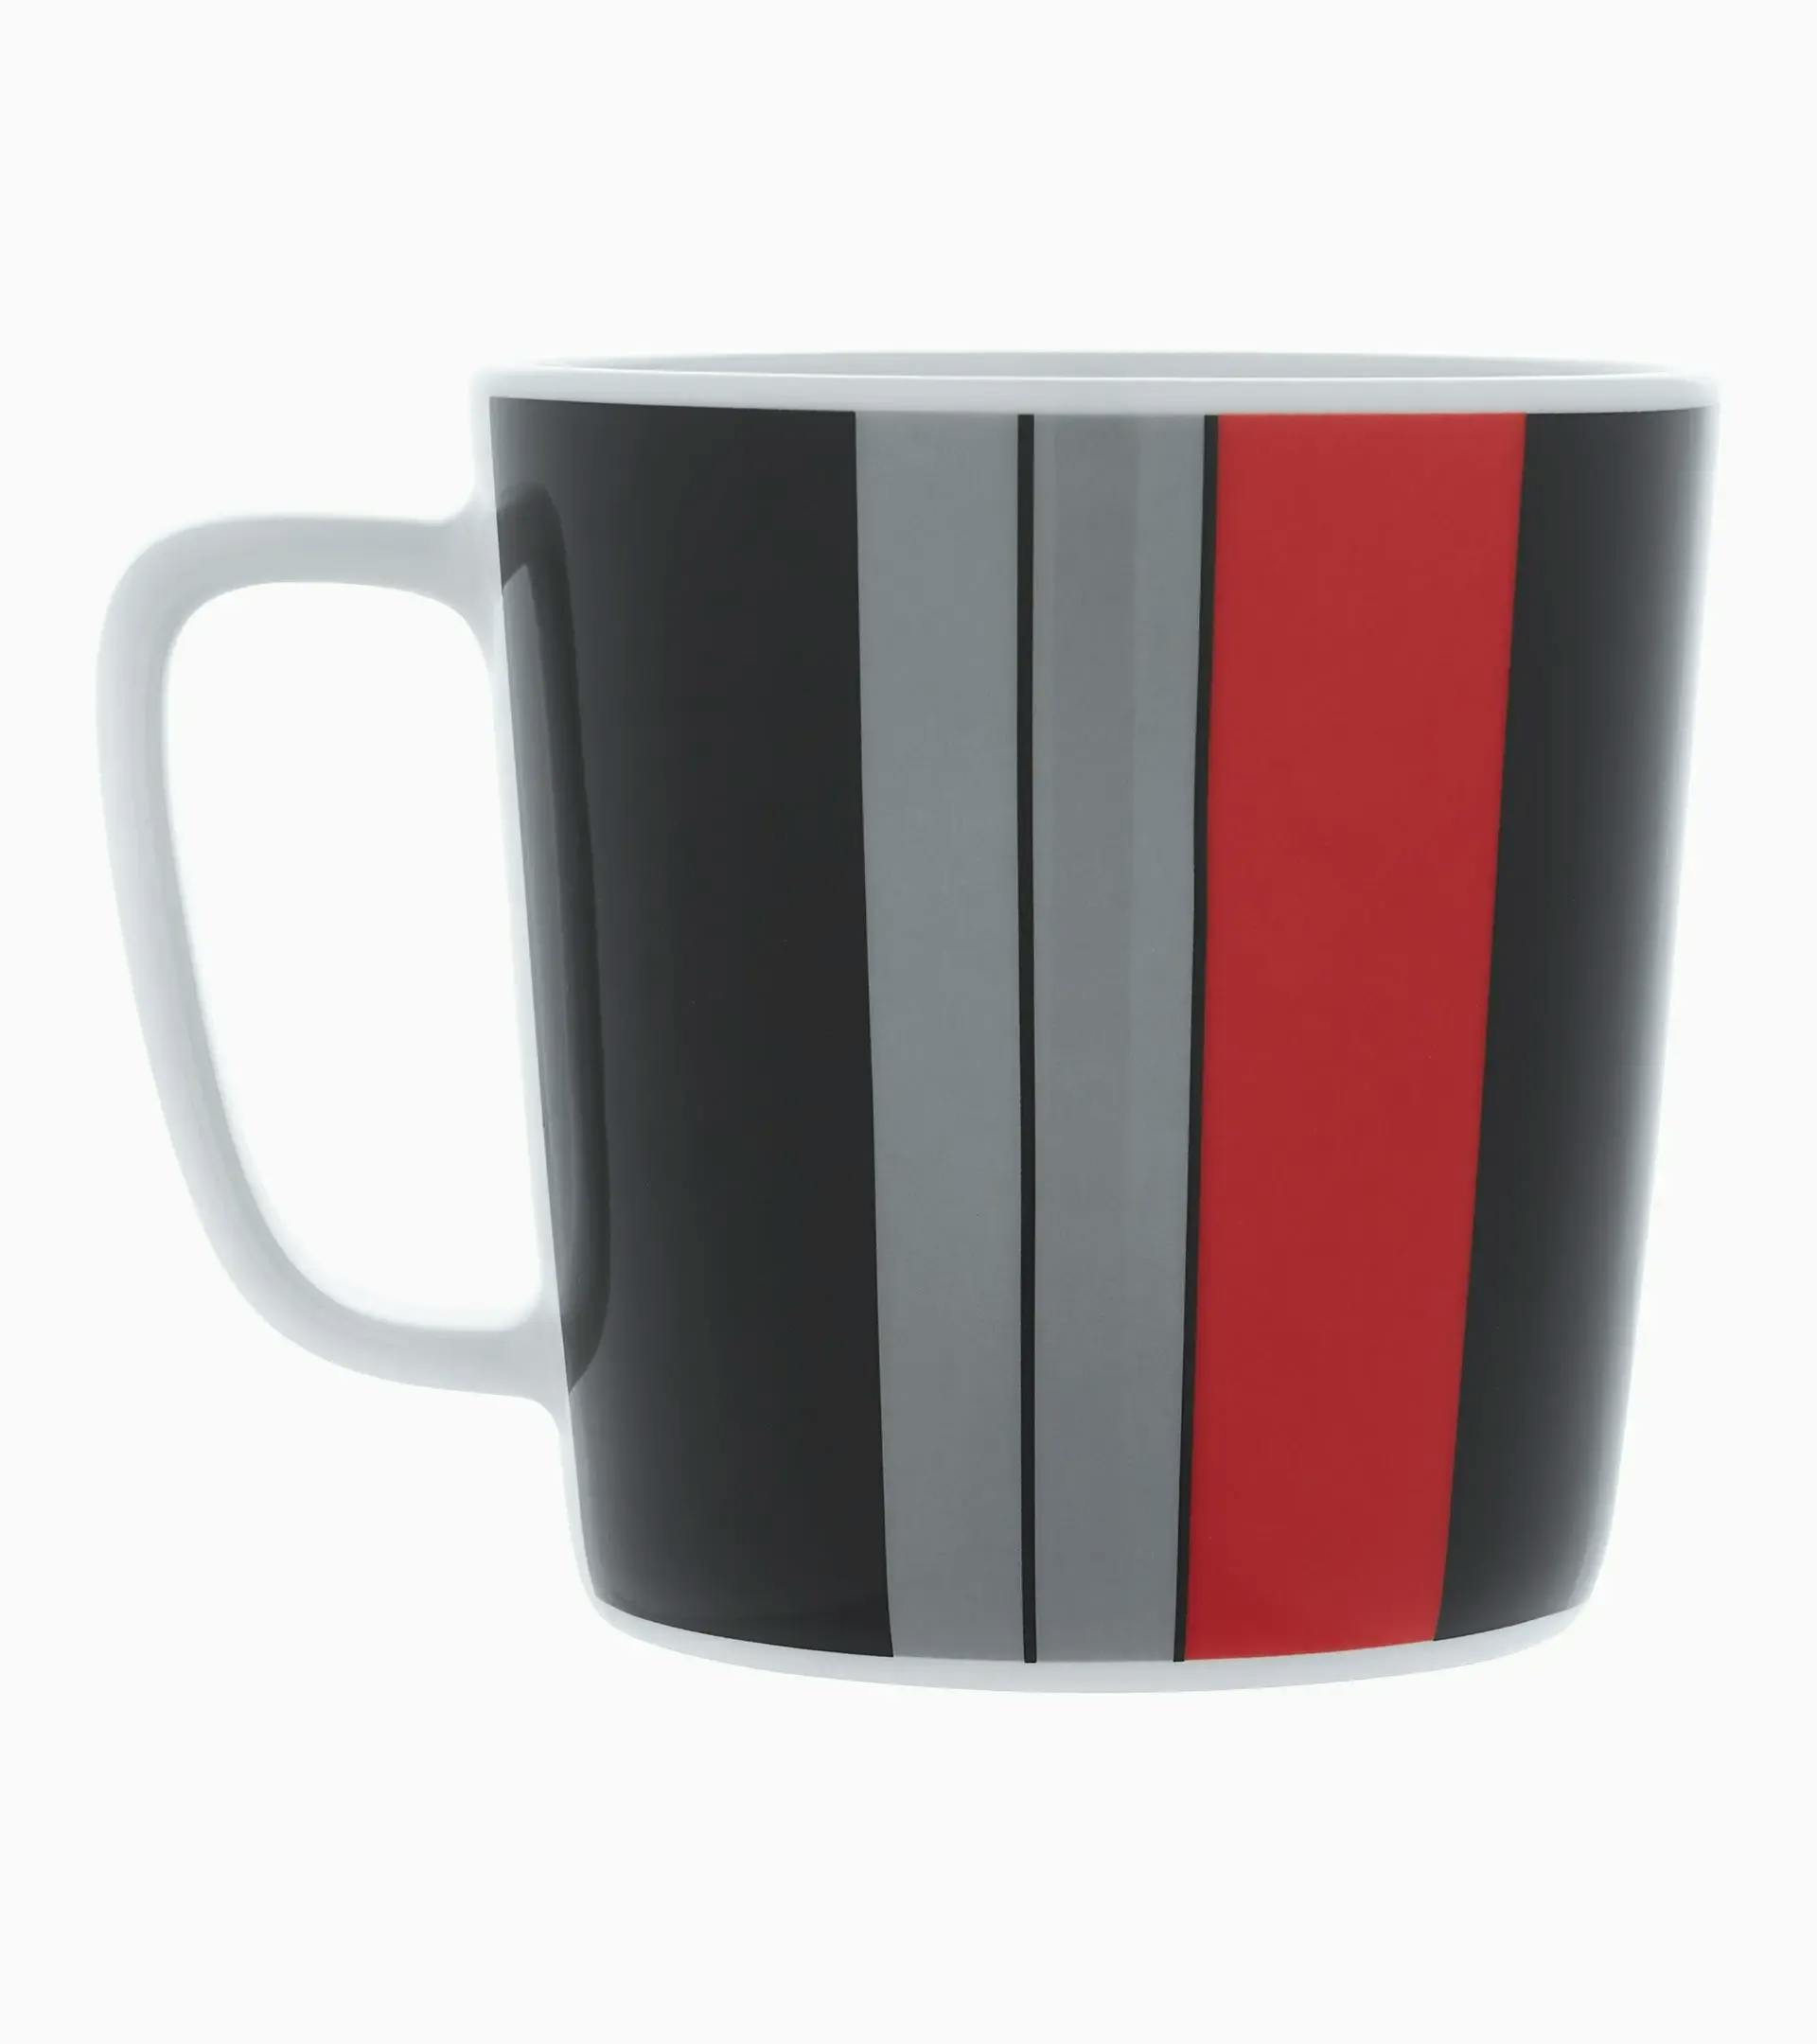 Collector's cup no. 5 – 60Y Porsche 911 – Limited Edition 2